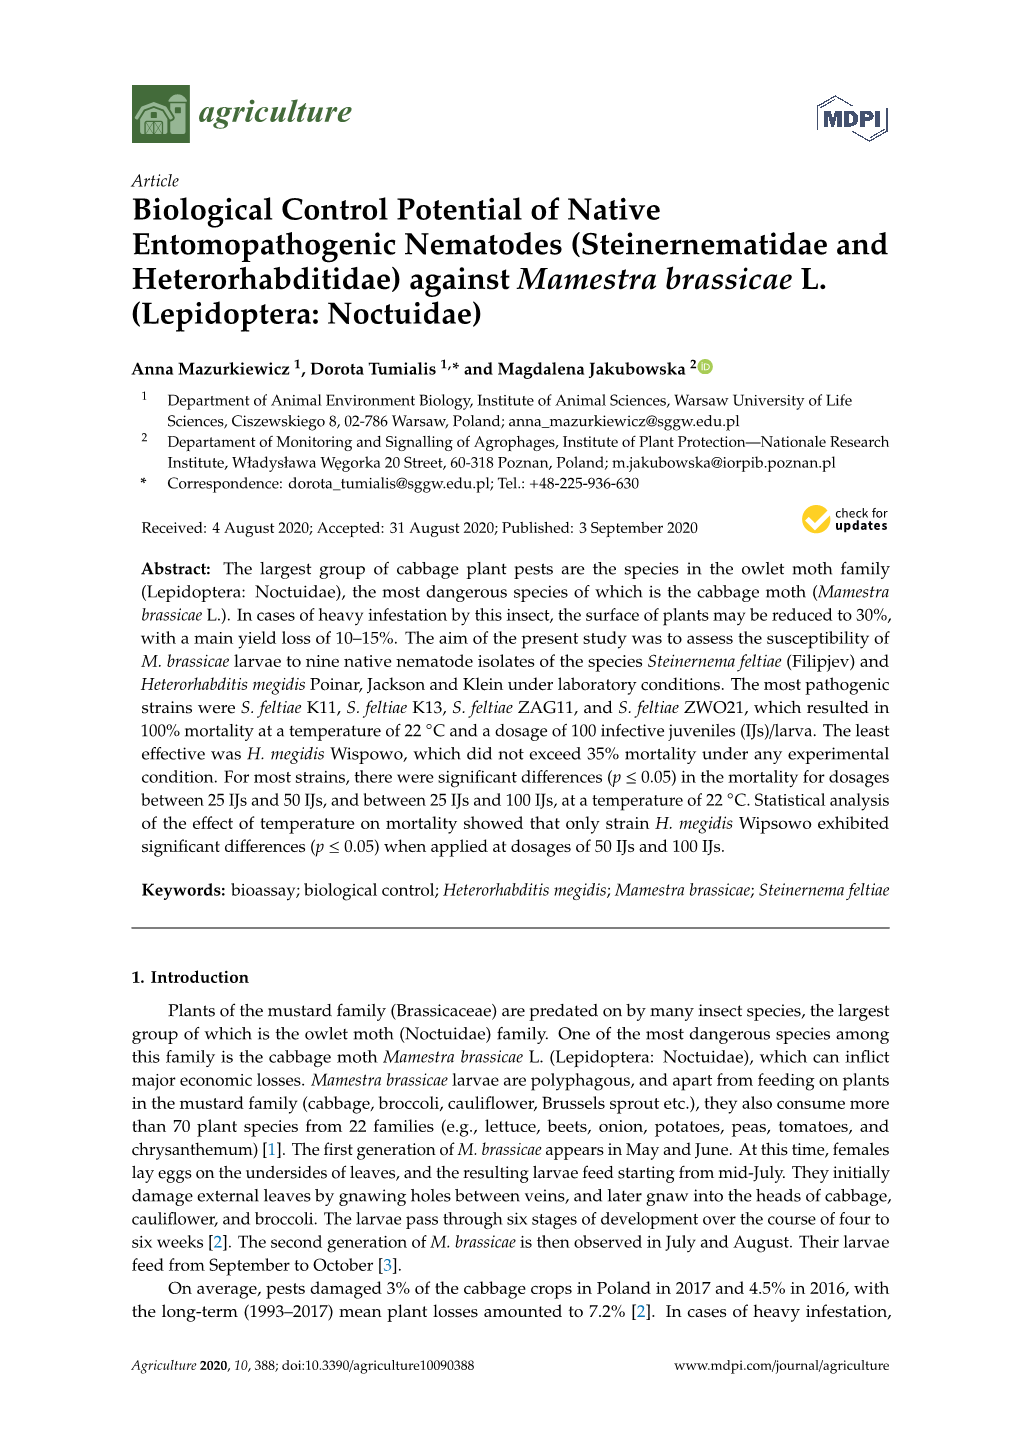 Biological Control Potential of Native Entomopathogenic Nematodes (Steinernematidae and Heterorhabditidae) Against Mamestra Brassicae L